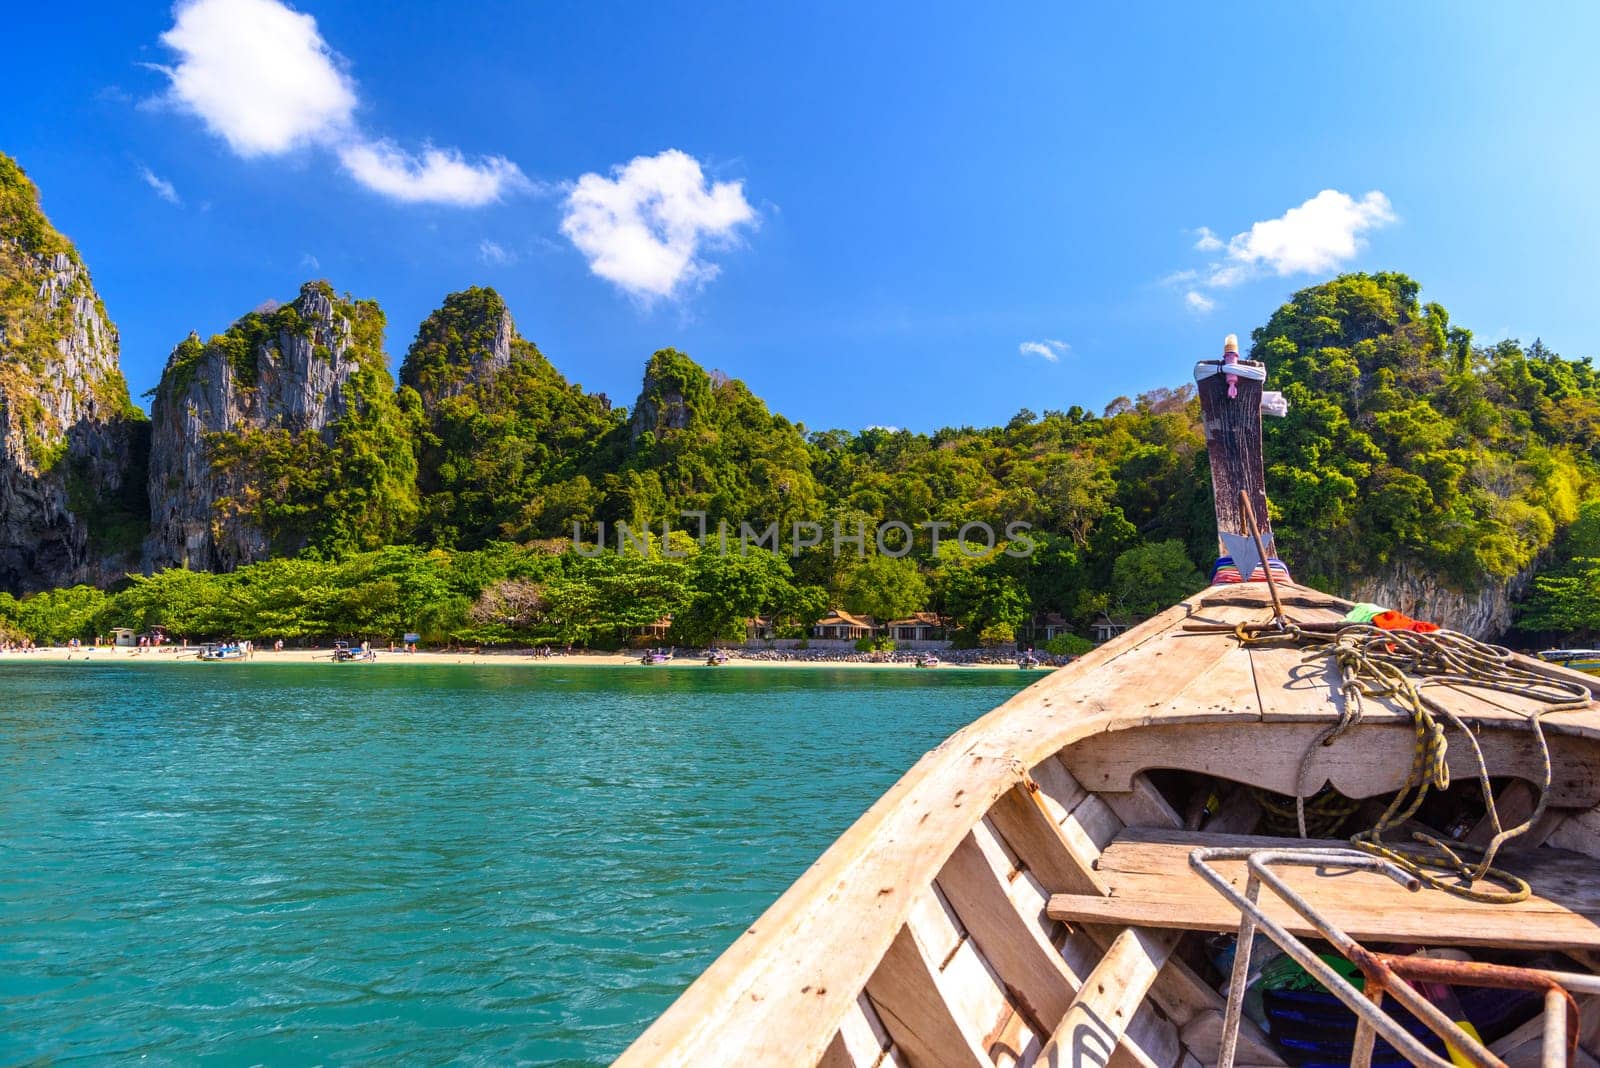 Boat bow in the sea near Ao Phra Nang Beach, Ao Nang, Krabi, Thailand.